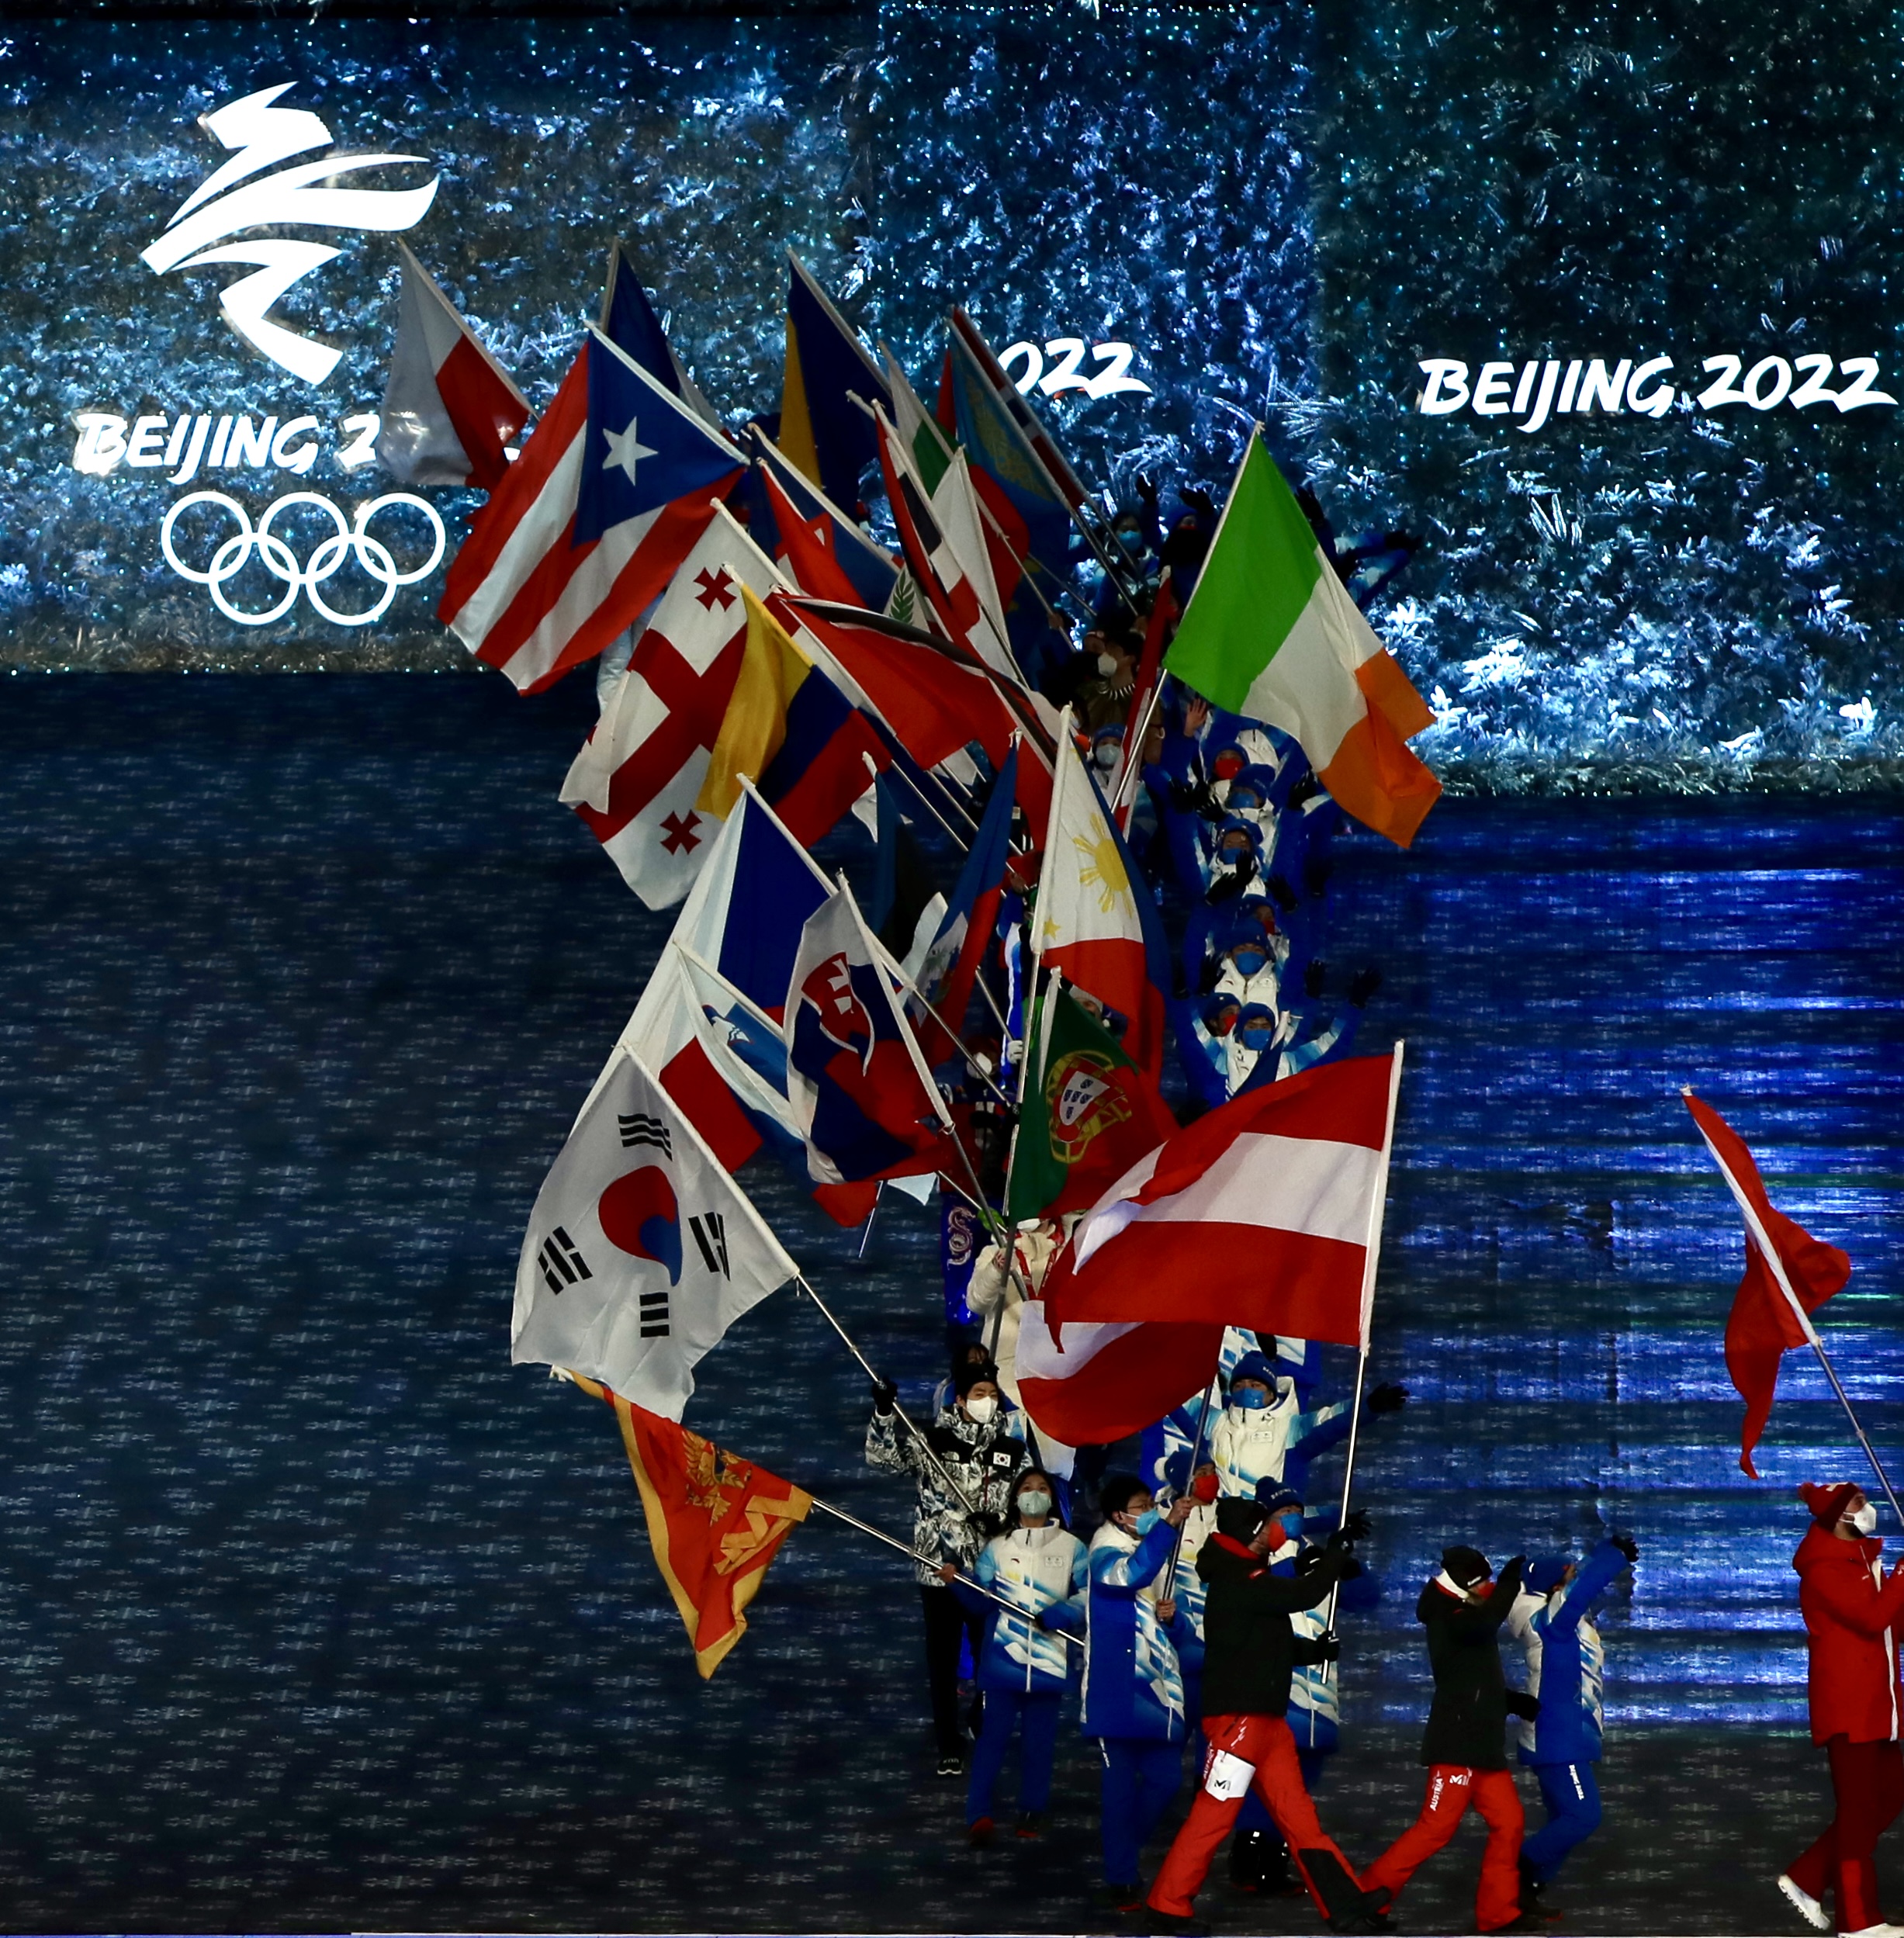 2022奥运会主题图片图片